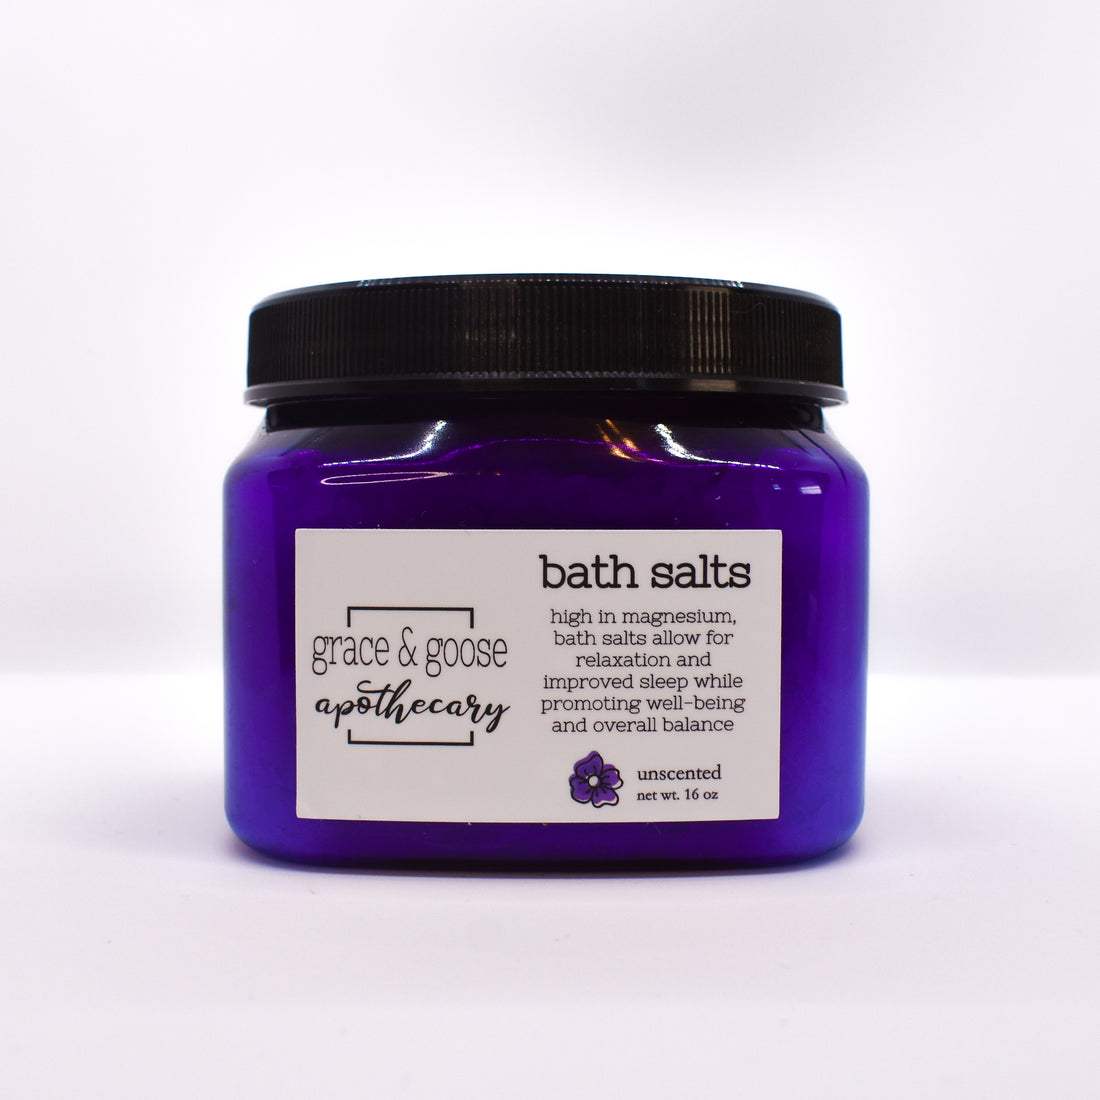 bath salts | lavender